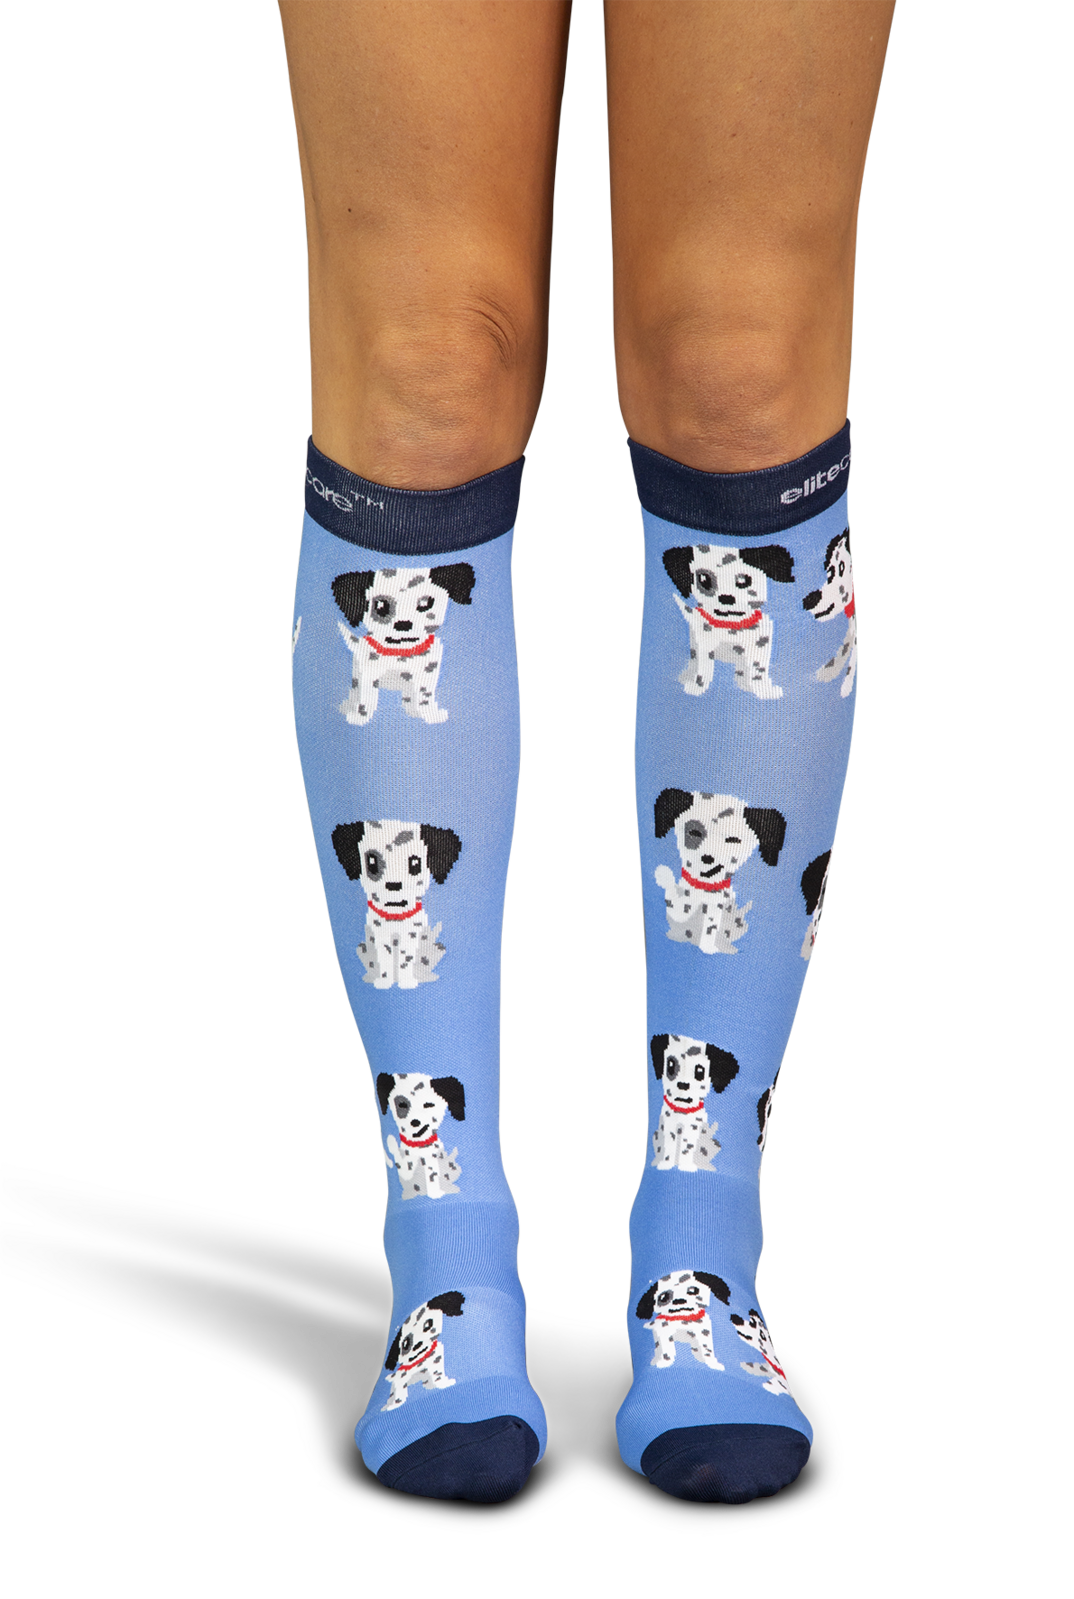 elitecare Dalmatian Compression Socks 6-9